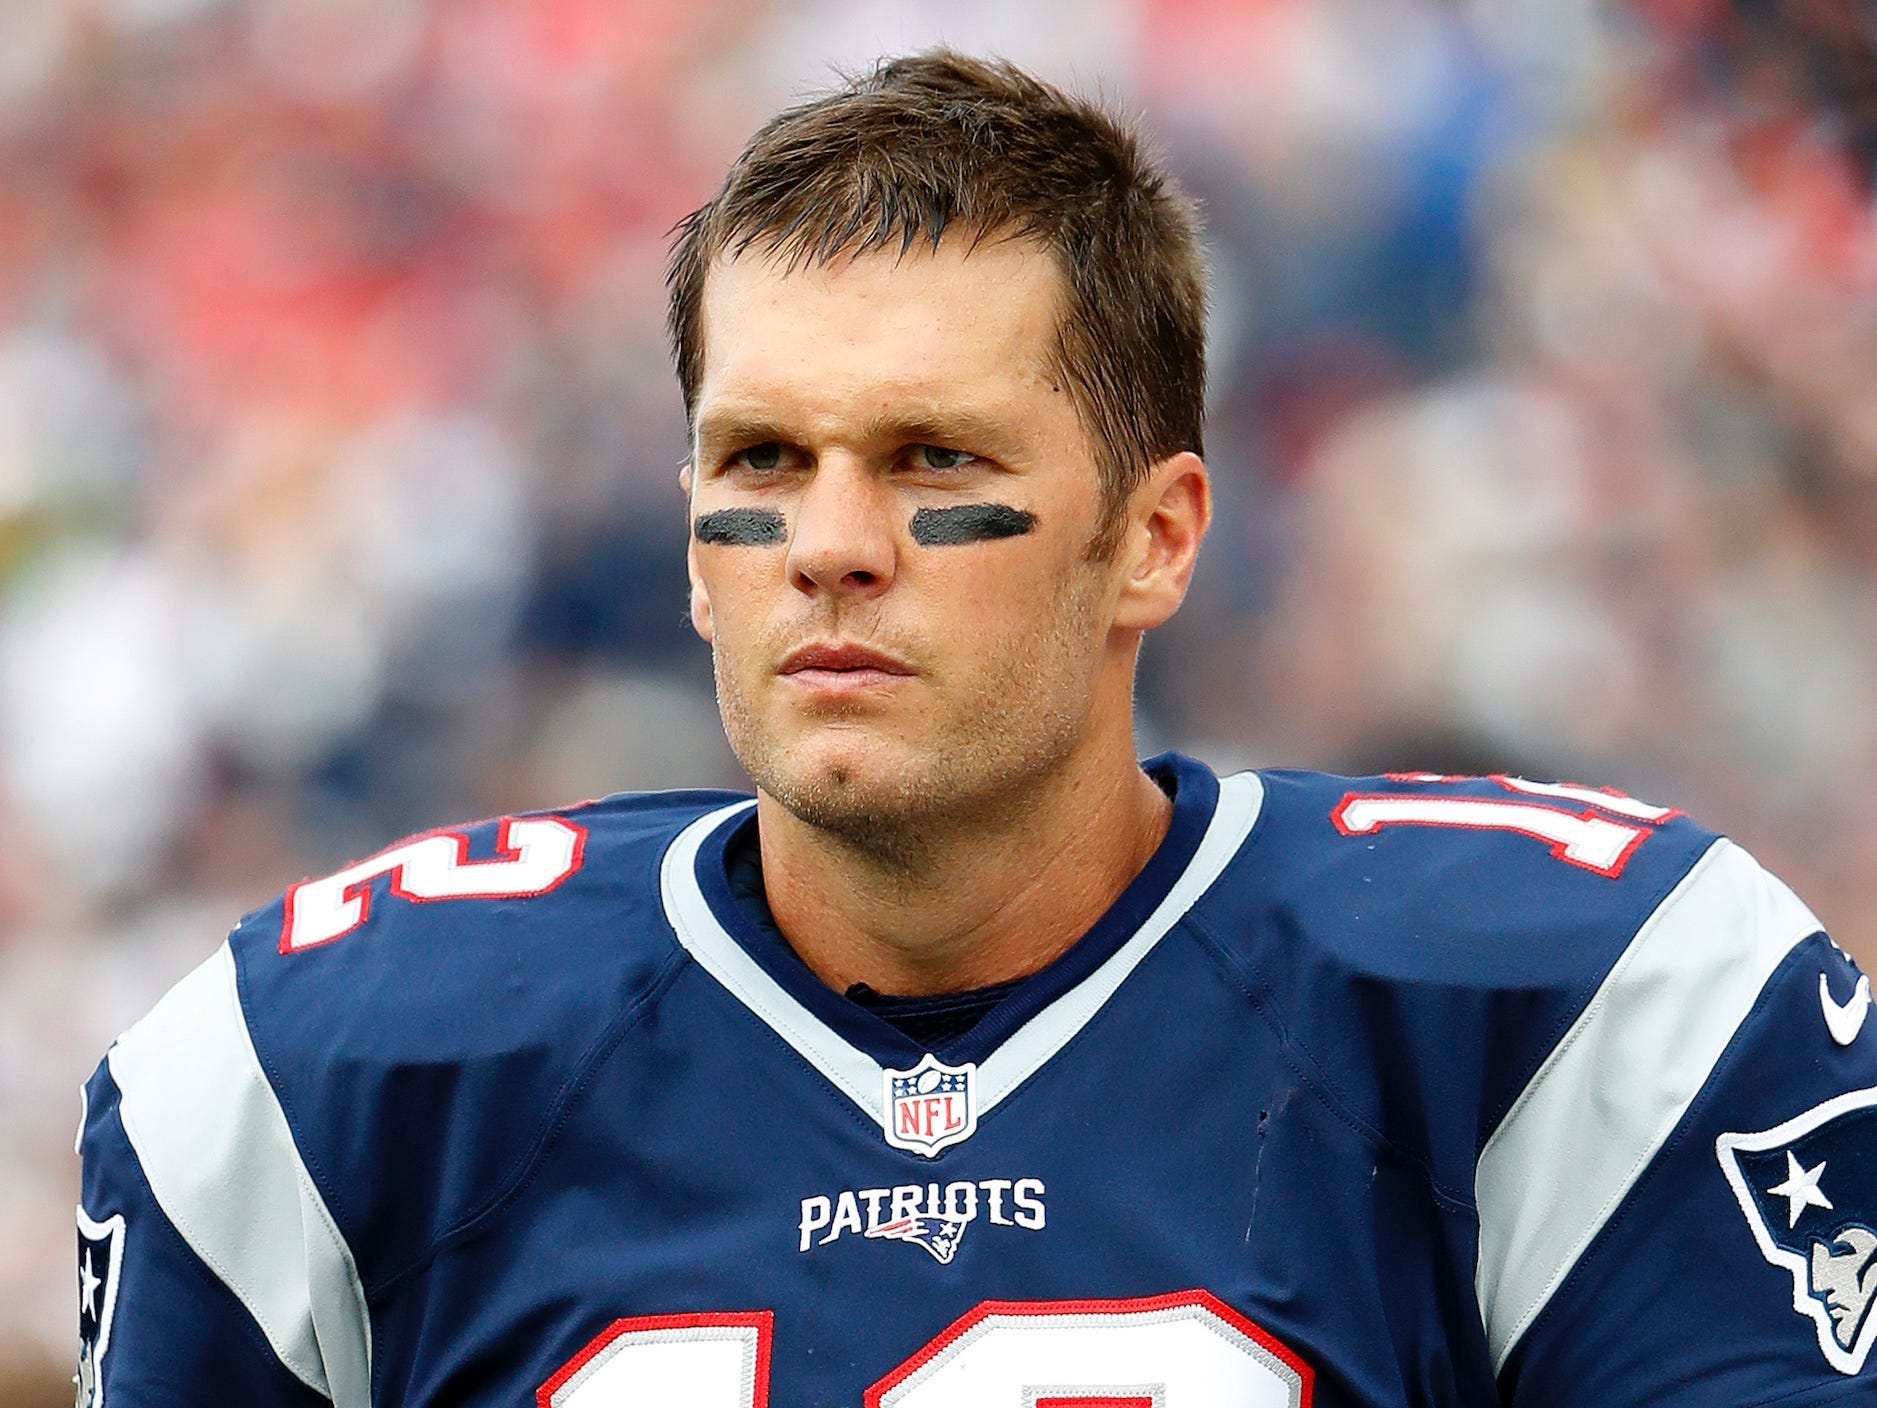 Tom Brady blickt 2016 während eines Spiels der Patriots finster drein.